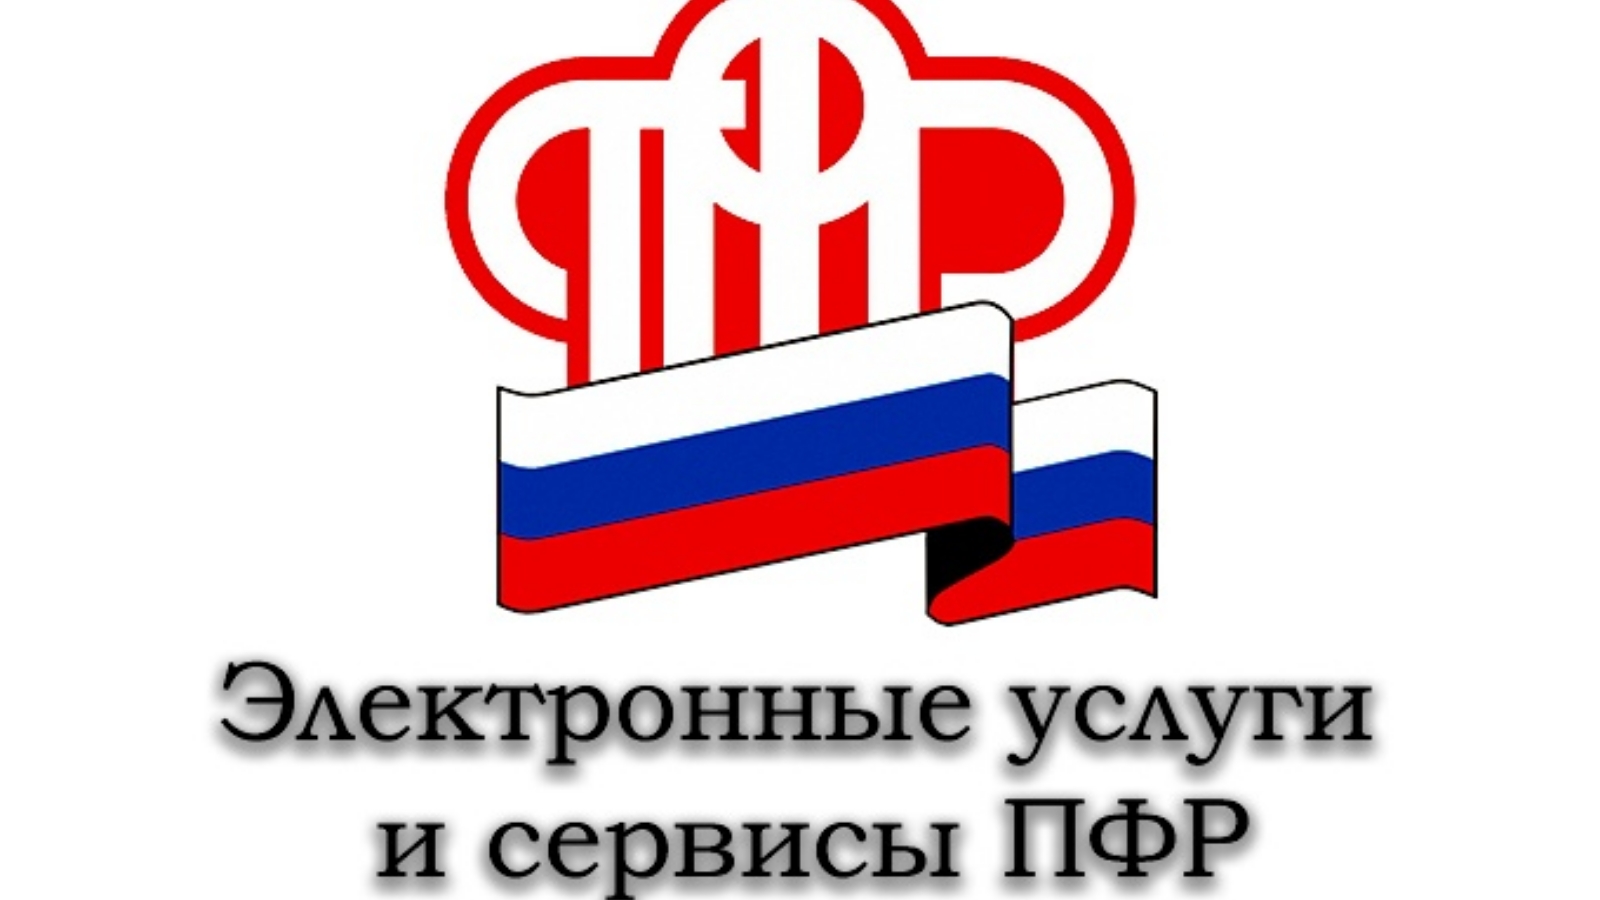 П пенсионный фонд российской федерации